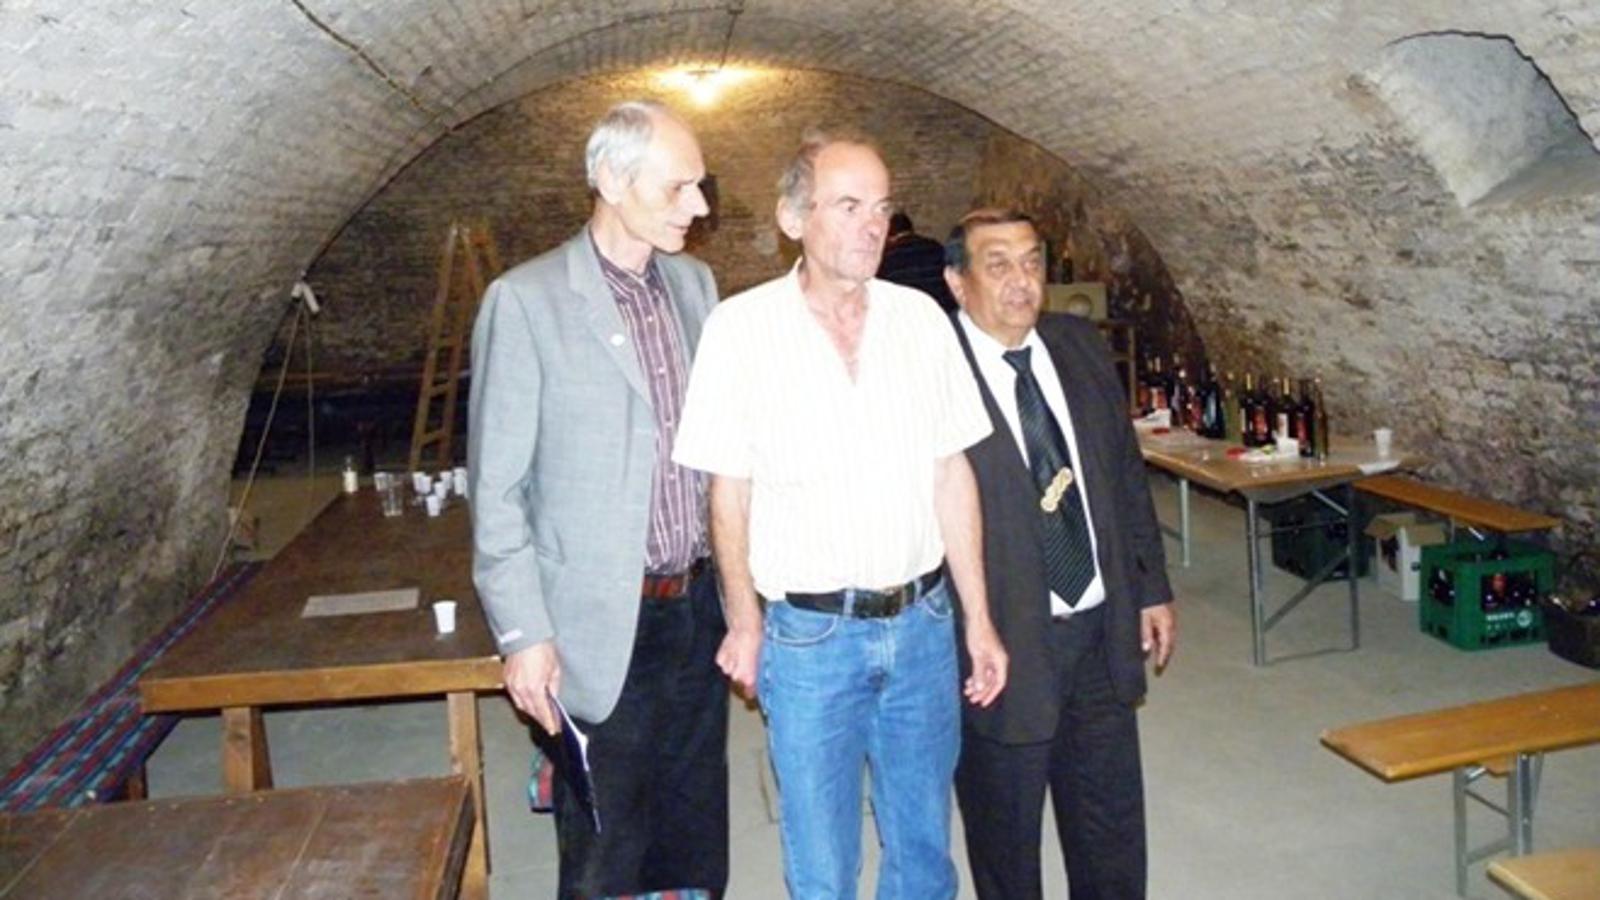 S lijeva: Petar Radosavljević, Mile Maras i Nikola Jugović (načelnik općine)